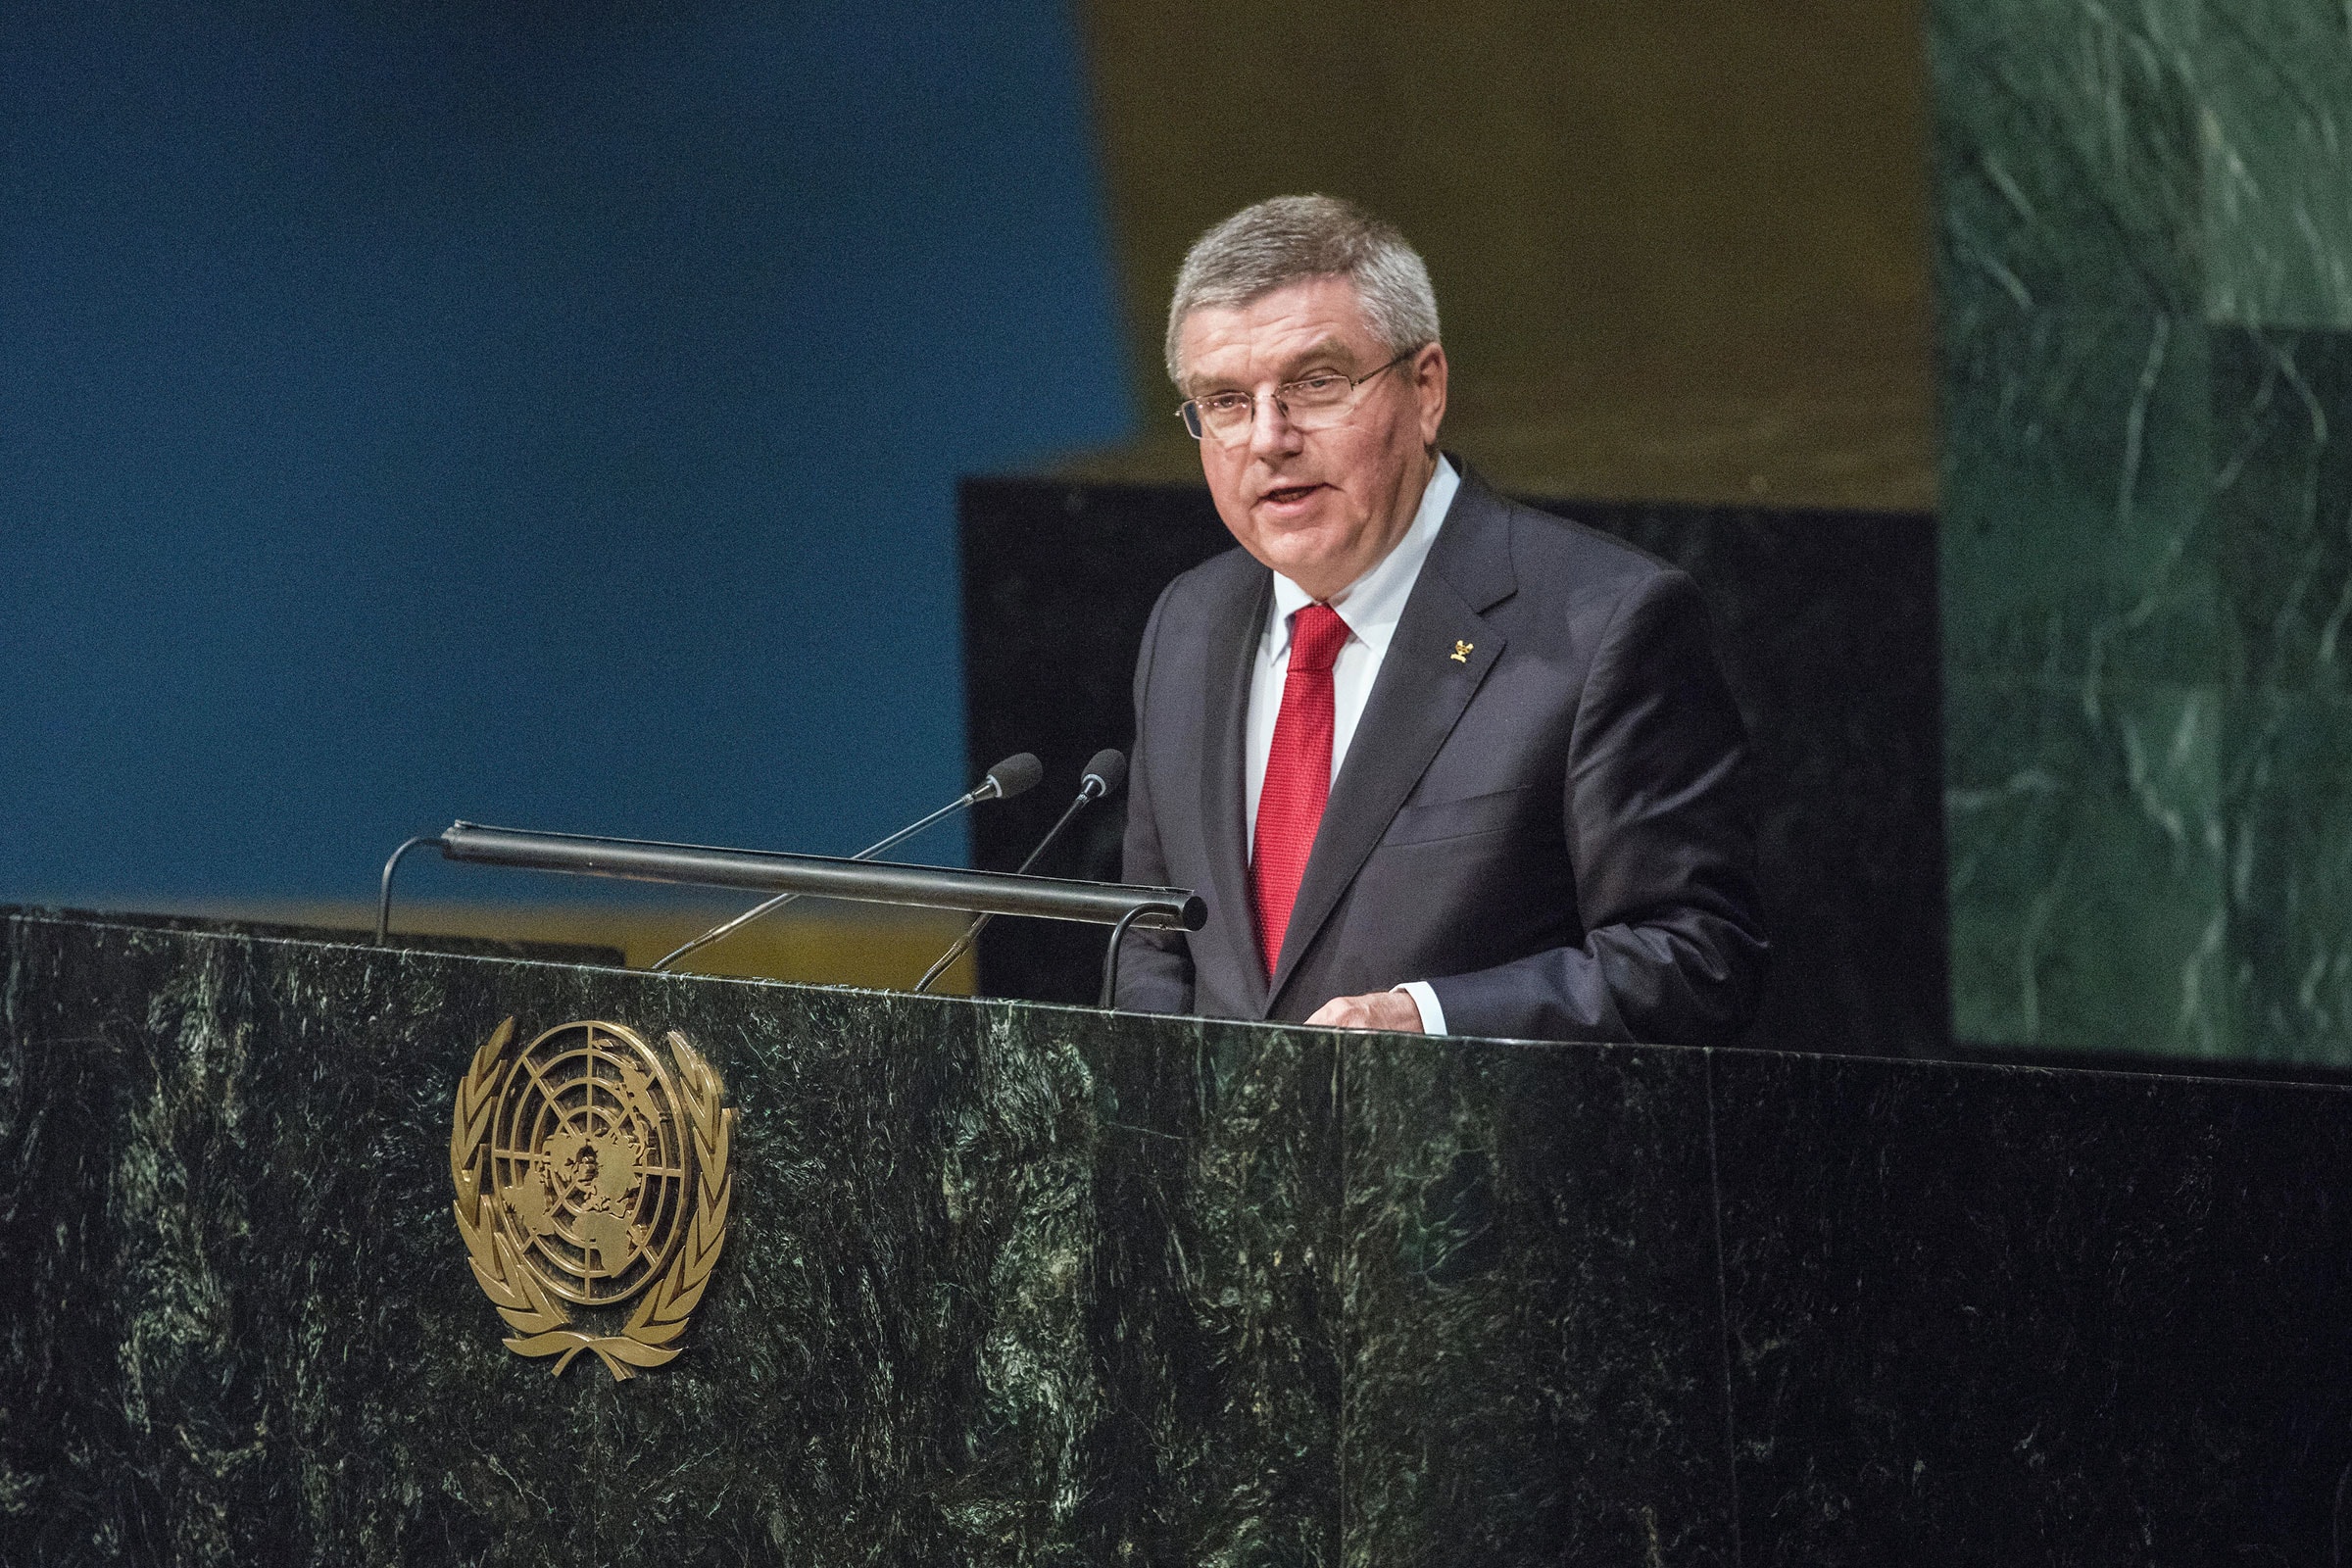 Le président du CIO, Thomas Bach, s'exprimant au siège des Nations Unies à New York.